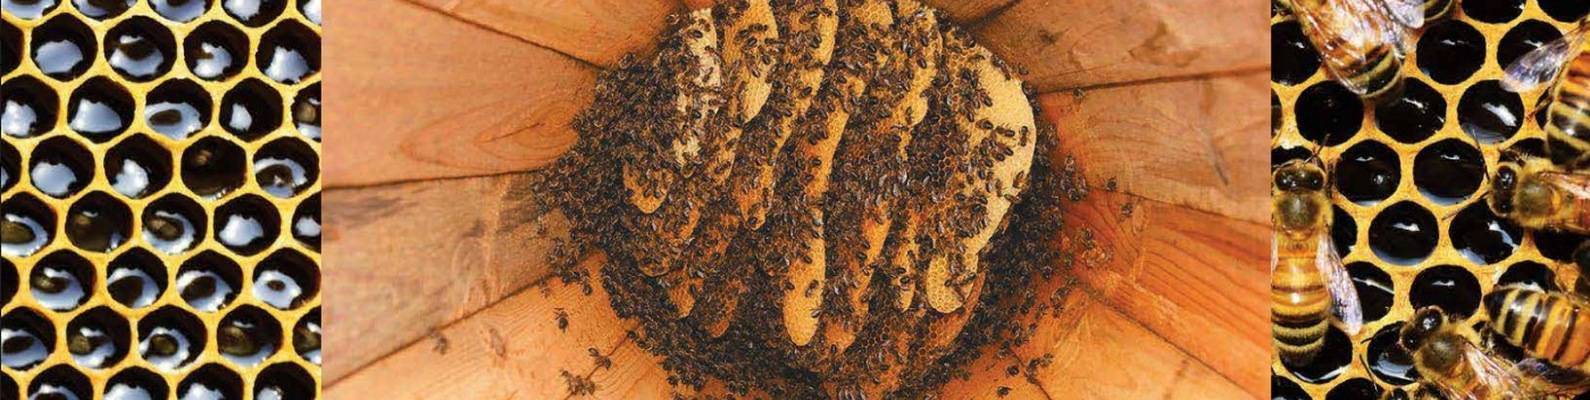 Колодное содержание пчел, колодное пчеловодство как новый взгляд